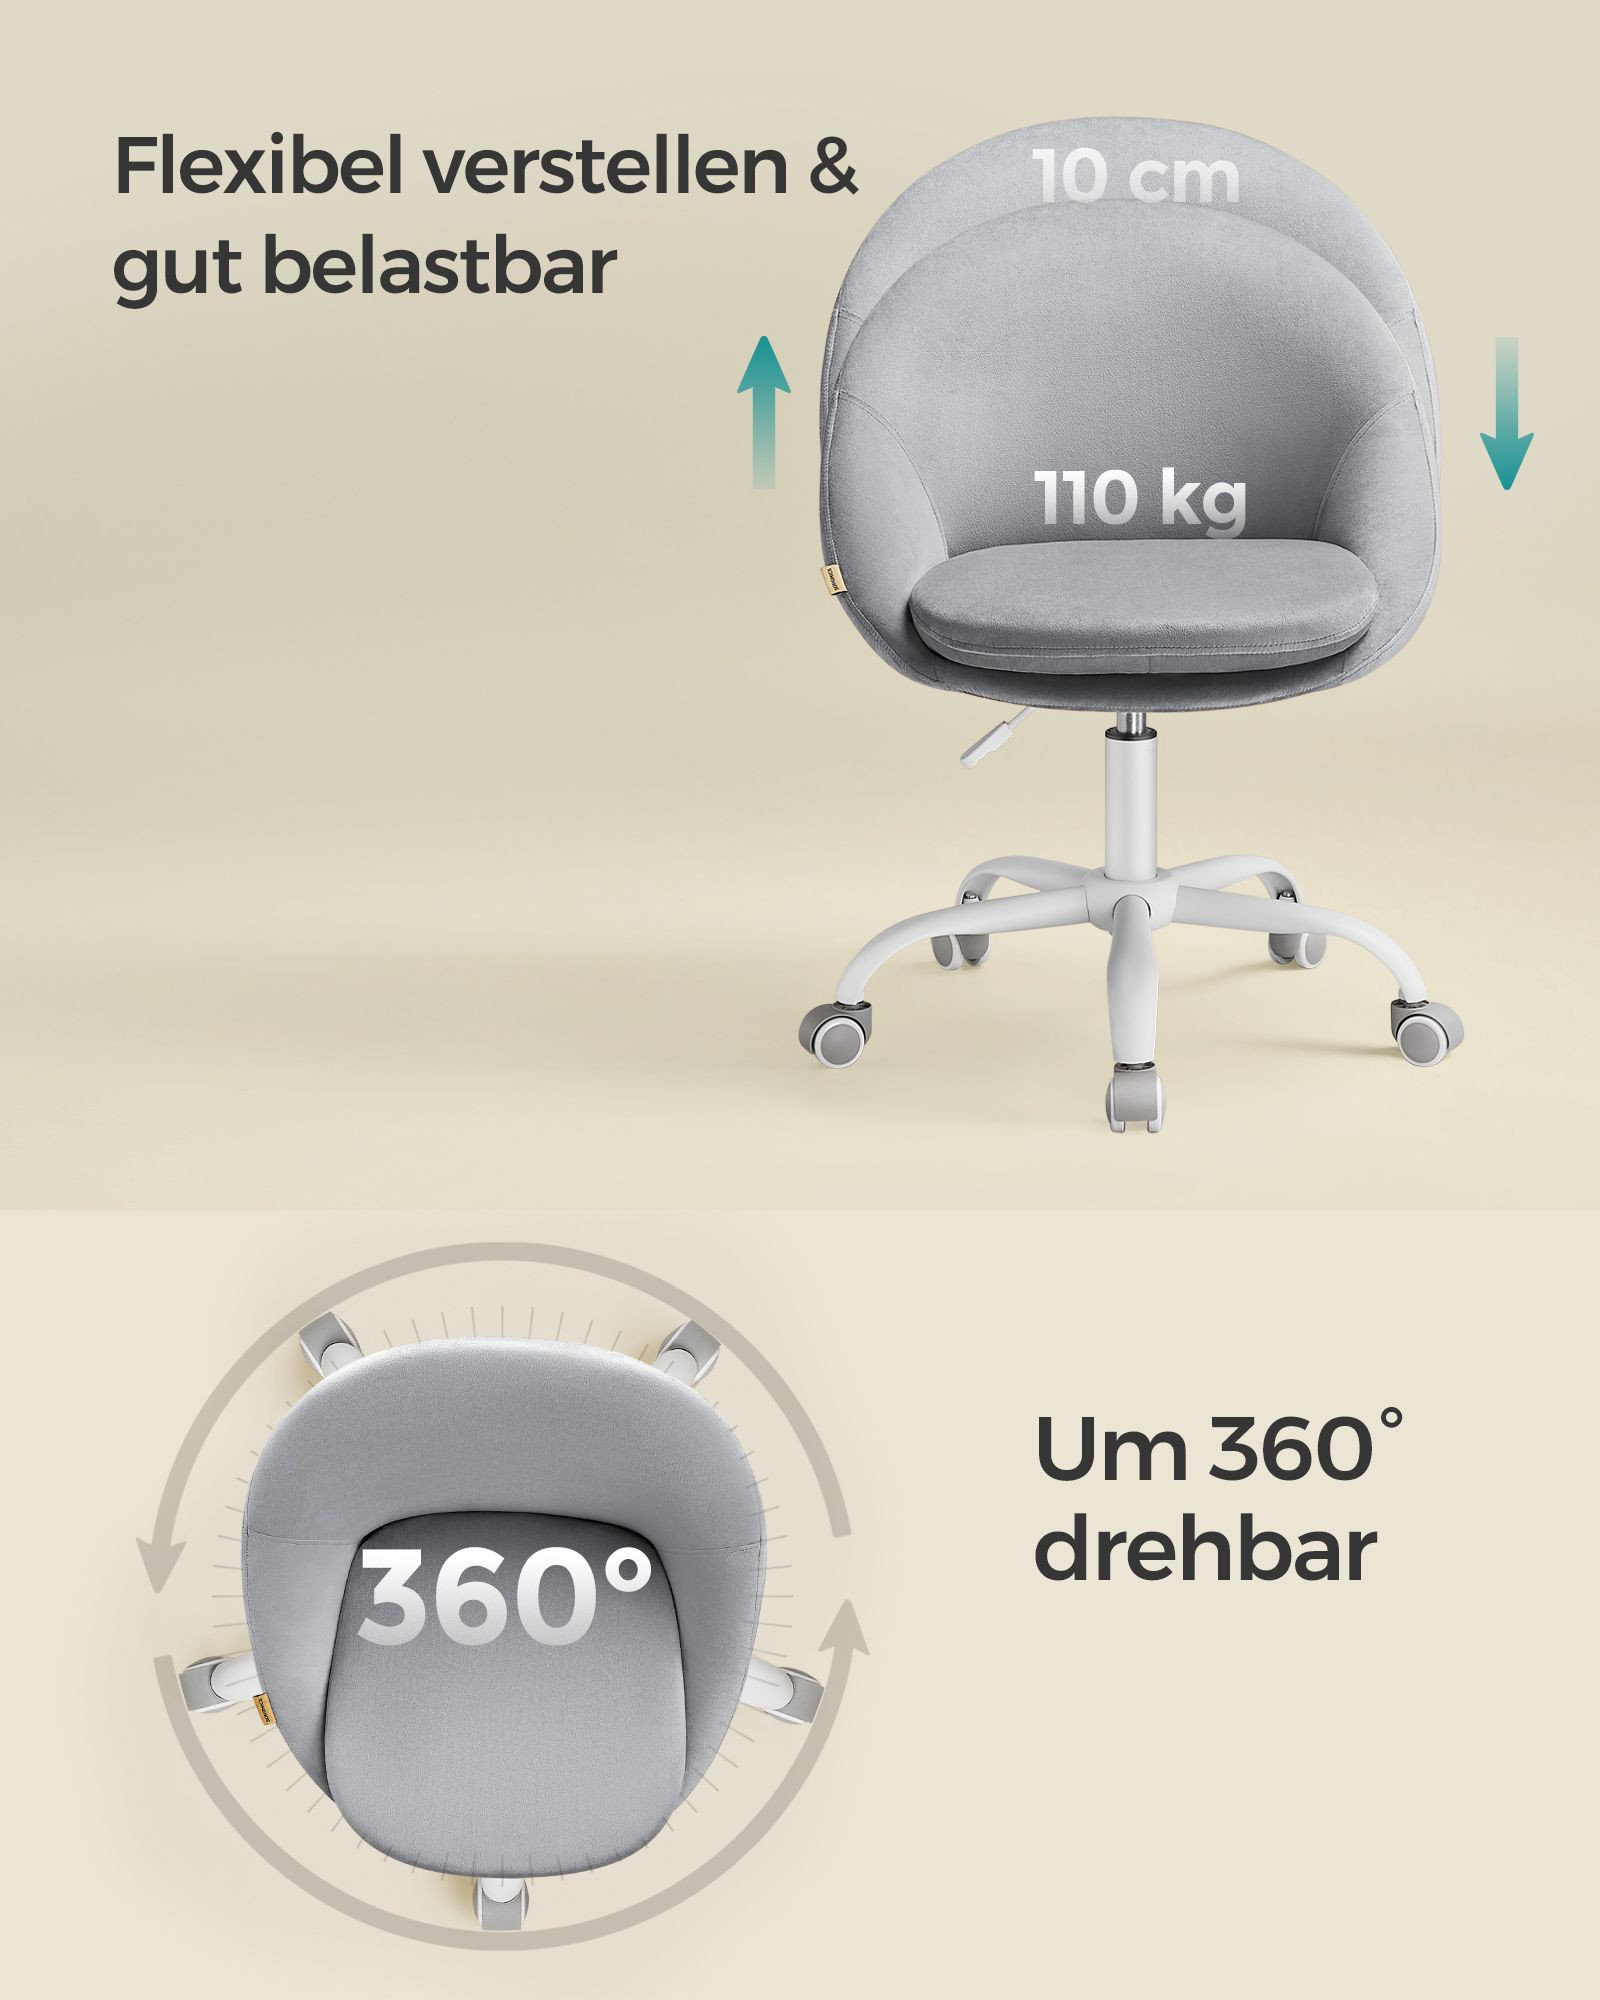 Kancelářská židle OBG020G04